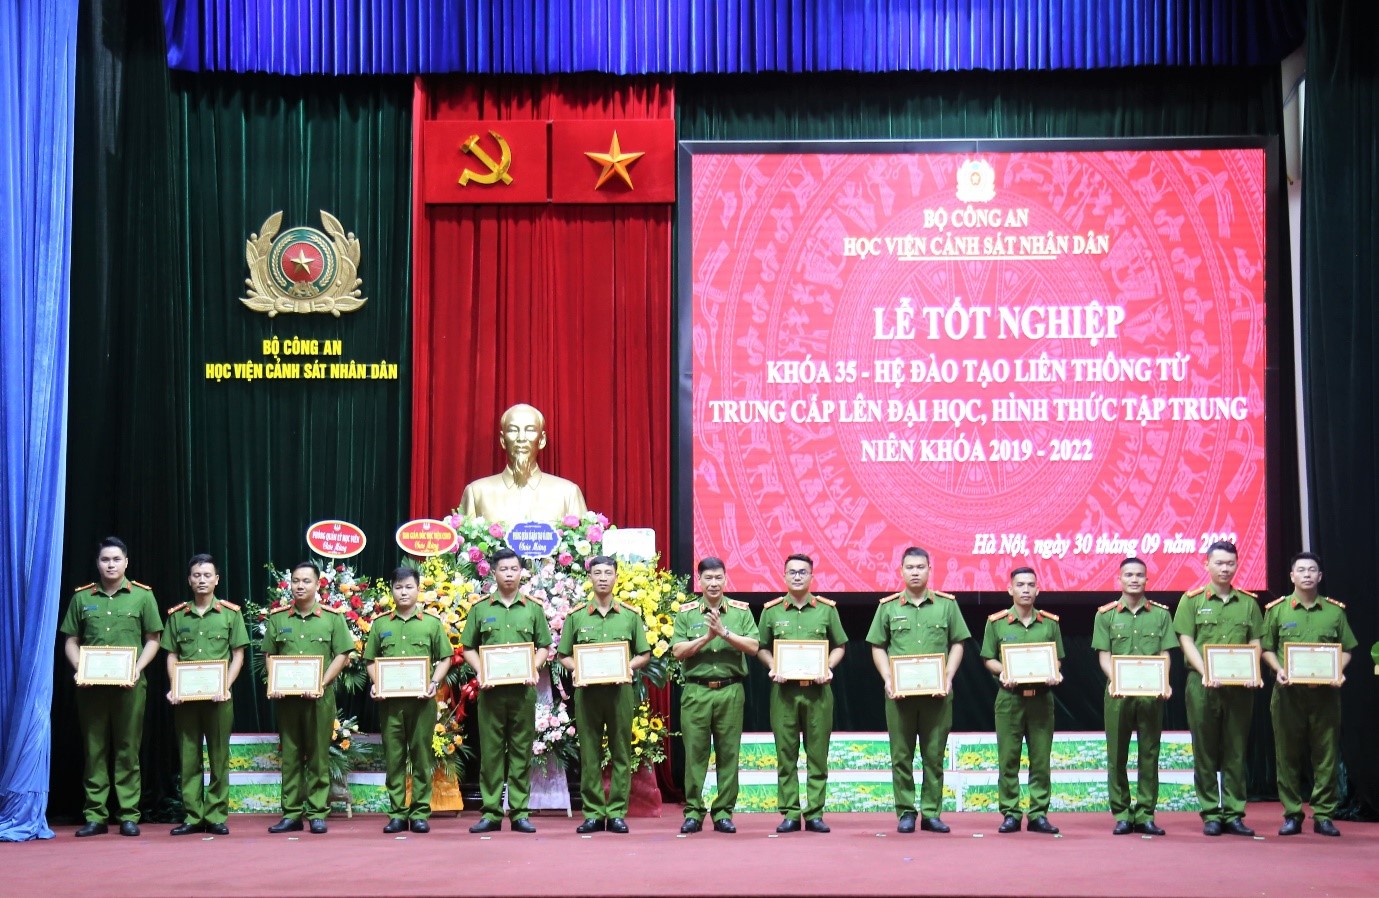 Trung tướng, GS. TS Trần Minh Hưởng, Giám đốc Học viện trao giấy khen cho các học viên có thành tích xuất sắc trong học tập và rèn luyện